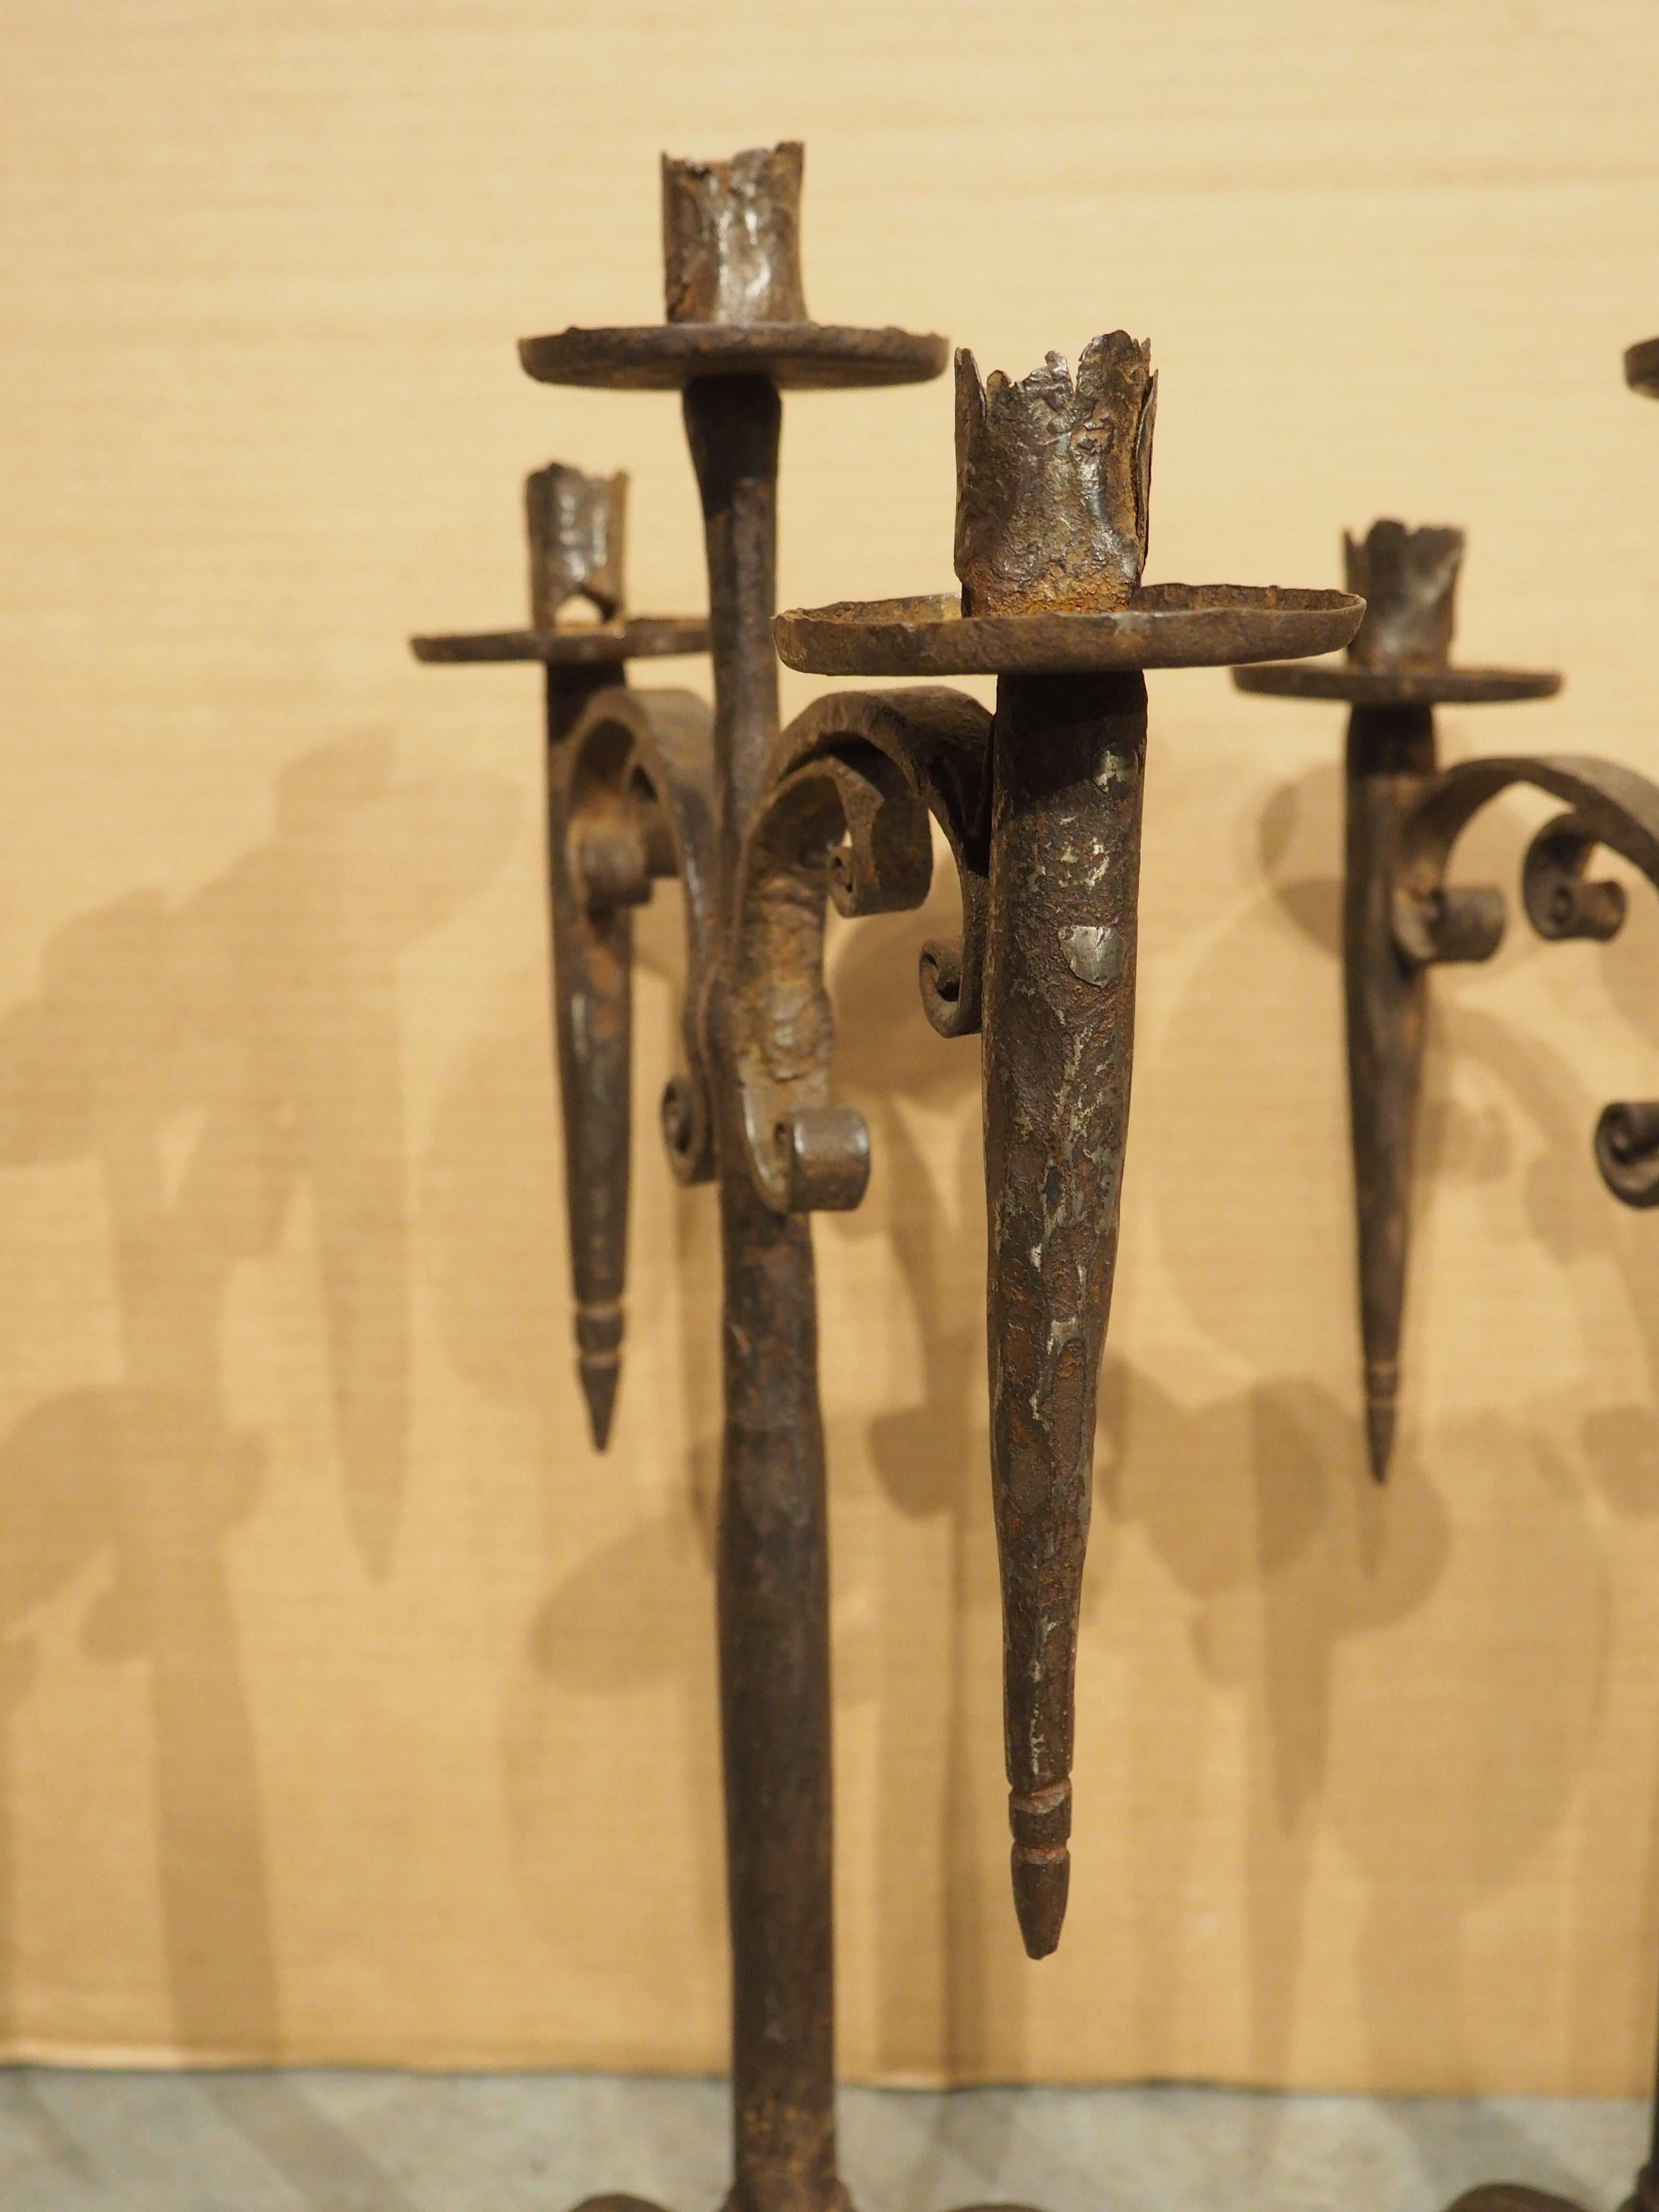 Dieses Paar eiserner Fackelkerzenhalter voller Charme und Charakter wurde um 1700 in Spanien handgeschmiedet. Die sichtbaren Schlagspuren des Schmieds sowie der abgeflachte Stift, mit dem die stark verschnörkelten Arme befestigt sind, verleihen den